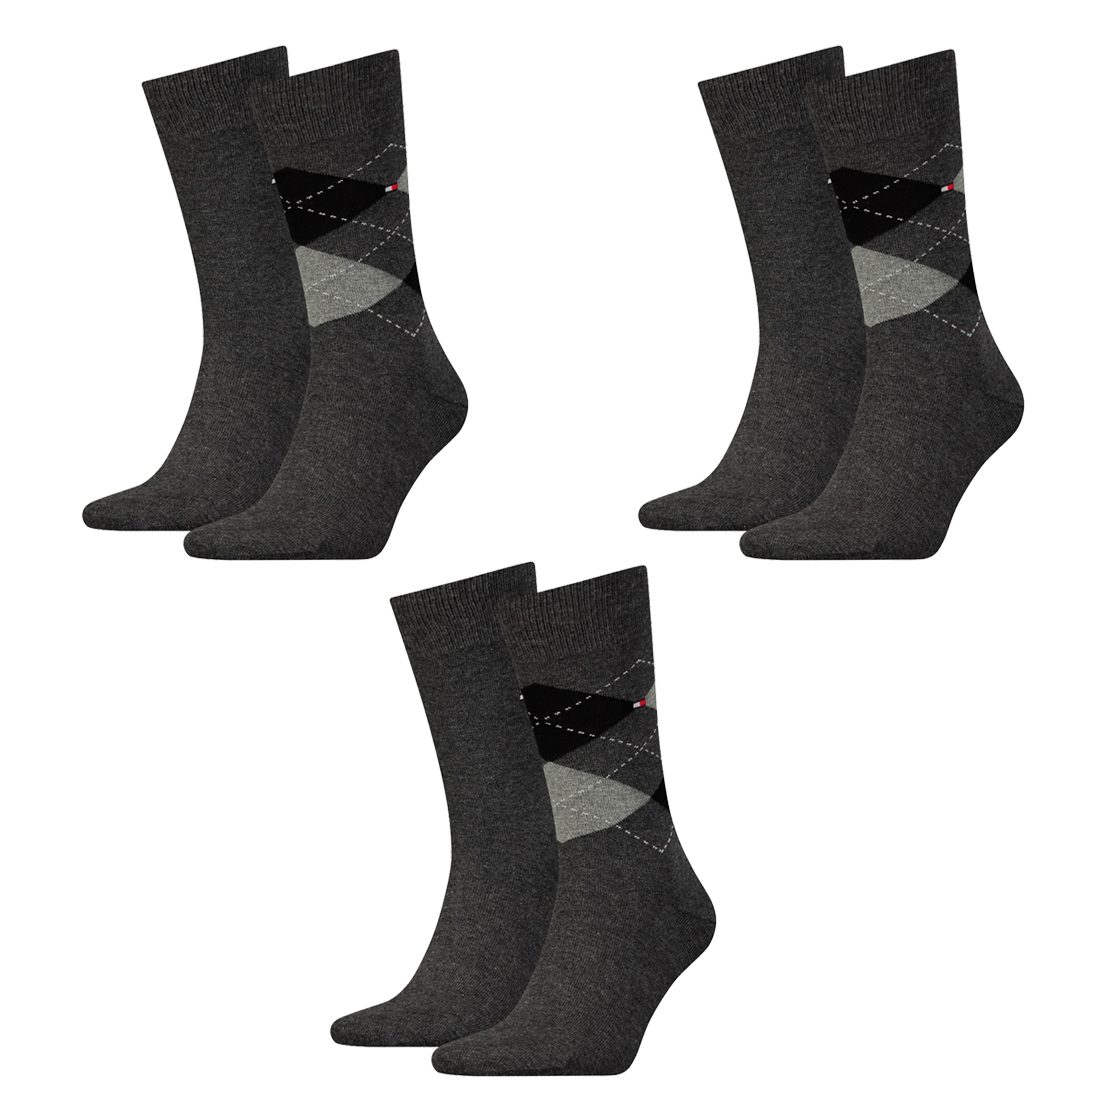 6 Paar TOMMY HILFIGER CHECK Socken Gr. 39 - 46 Herren Business Sneaker Socken 201 - anthracite, 39-42 von Tommy Hilfiger